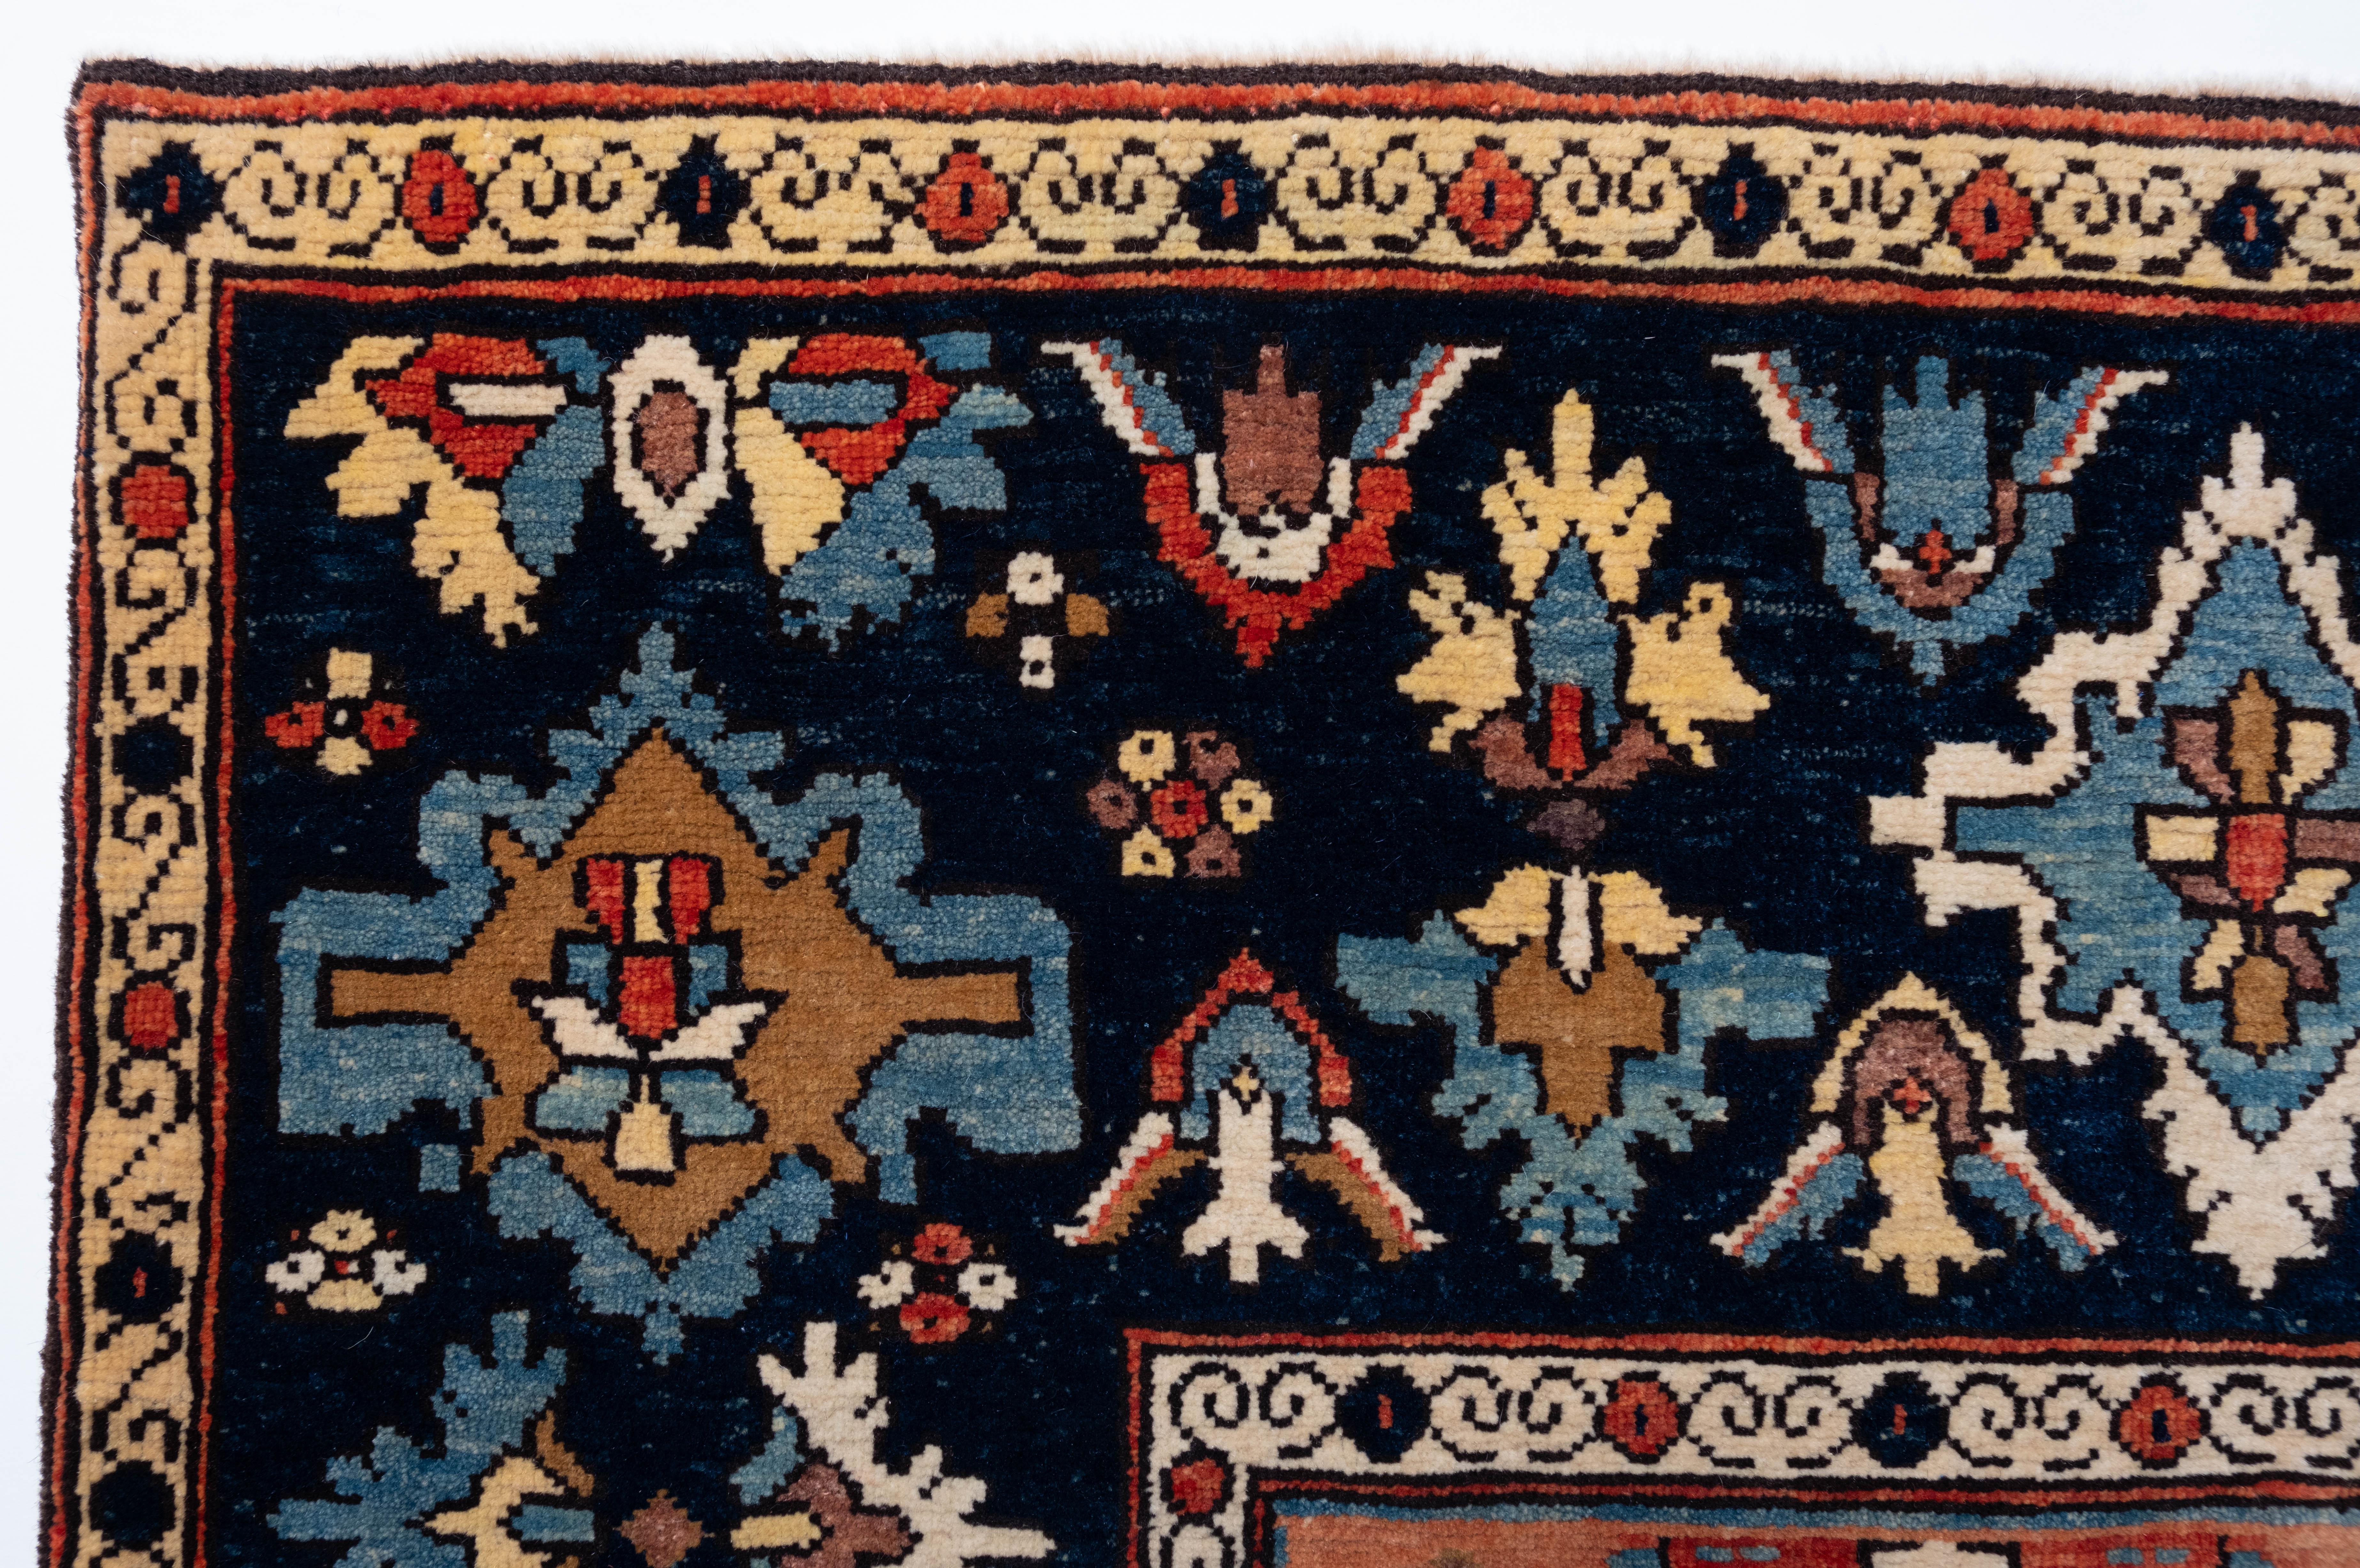 Die Quelle des Teppichs stammt aus dem Buch Orient Star - A Carpet Collection, E. Heinrich Kirchheim, Hali Publications Ltd, 1993 nr.75. Dieses versetzte Muster besteht aus aufsteigenden, schildartigen Palmetten, die von blattähnlichen Flügeln